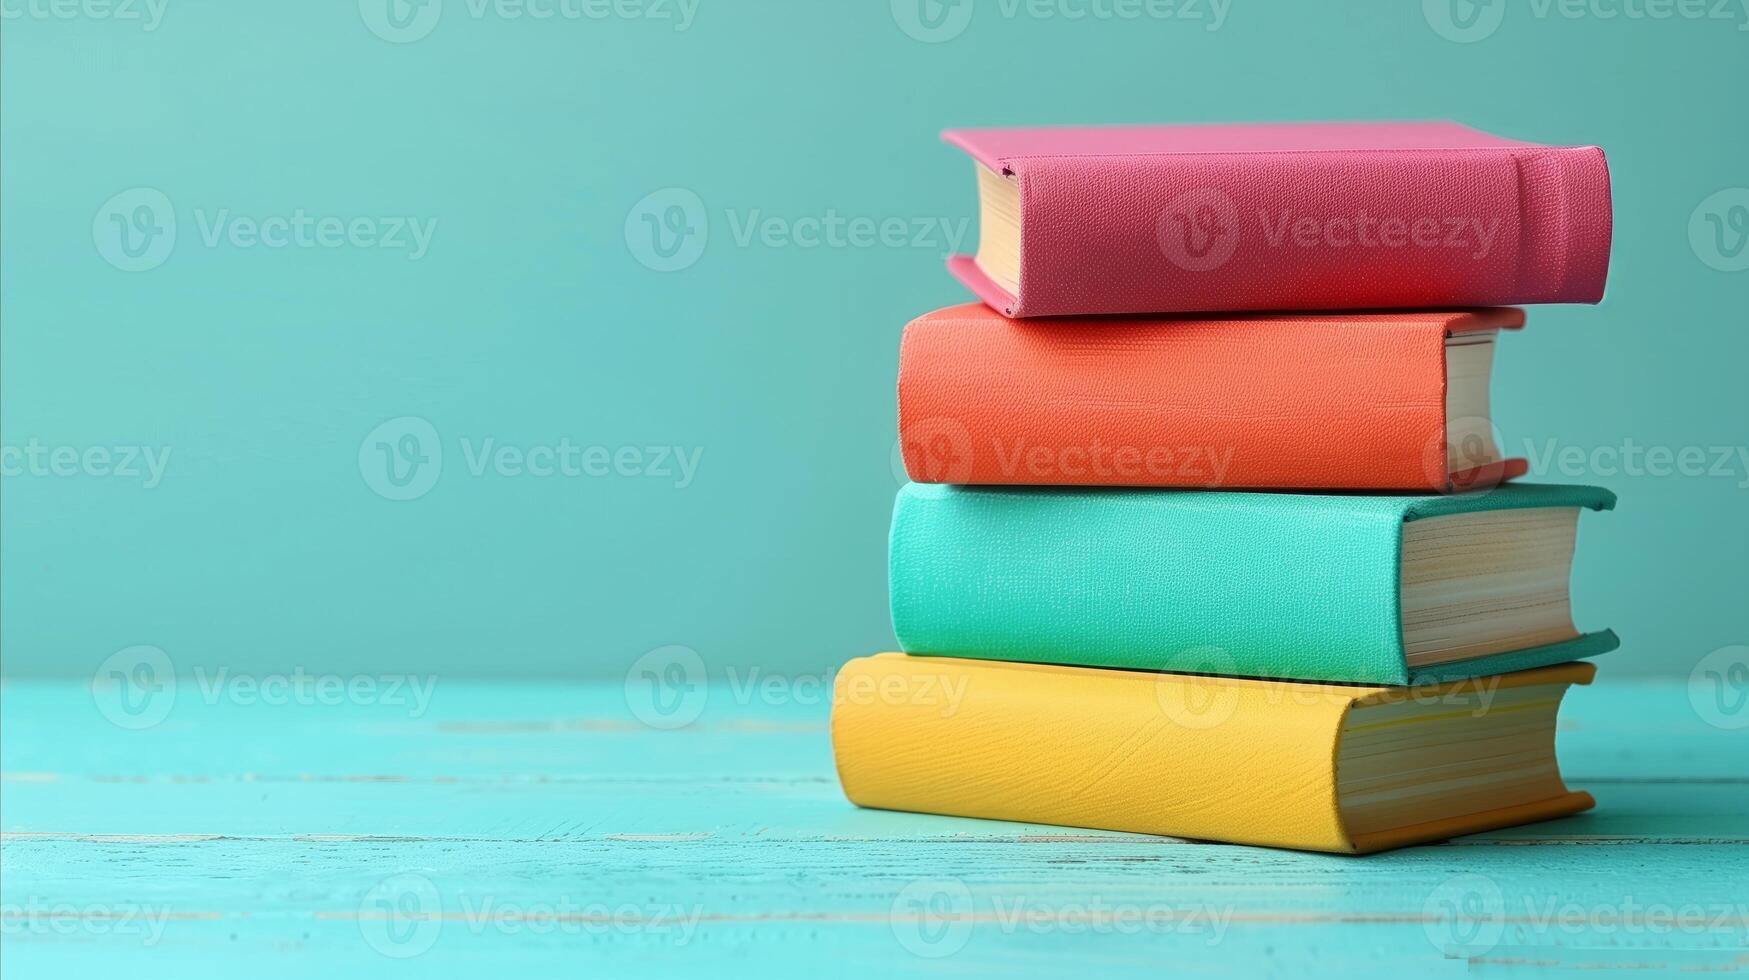 kleurrijk stack van boeken tegen een taling achtergrond foto